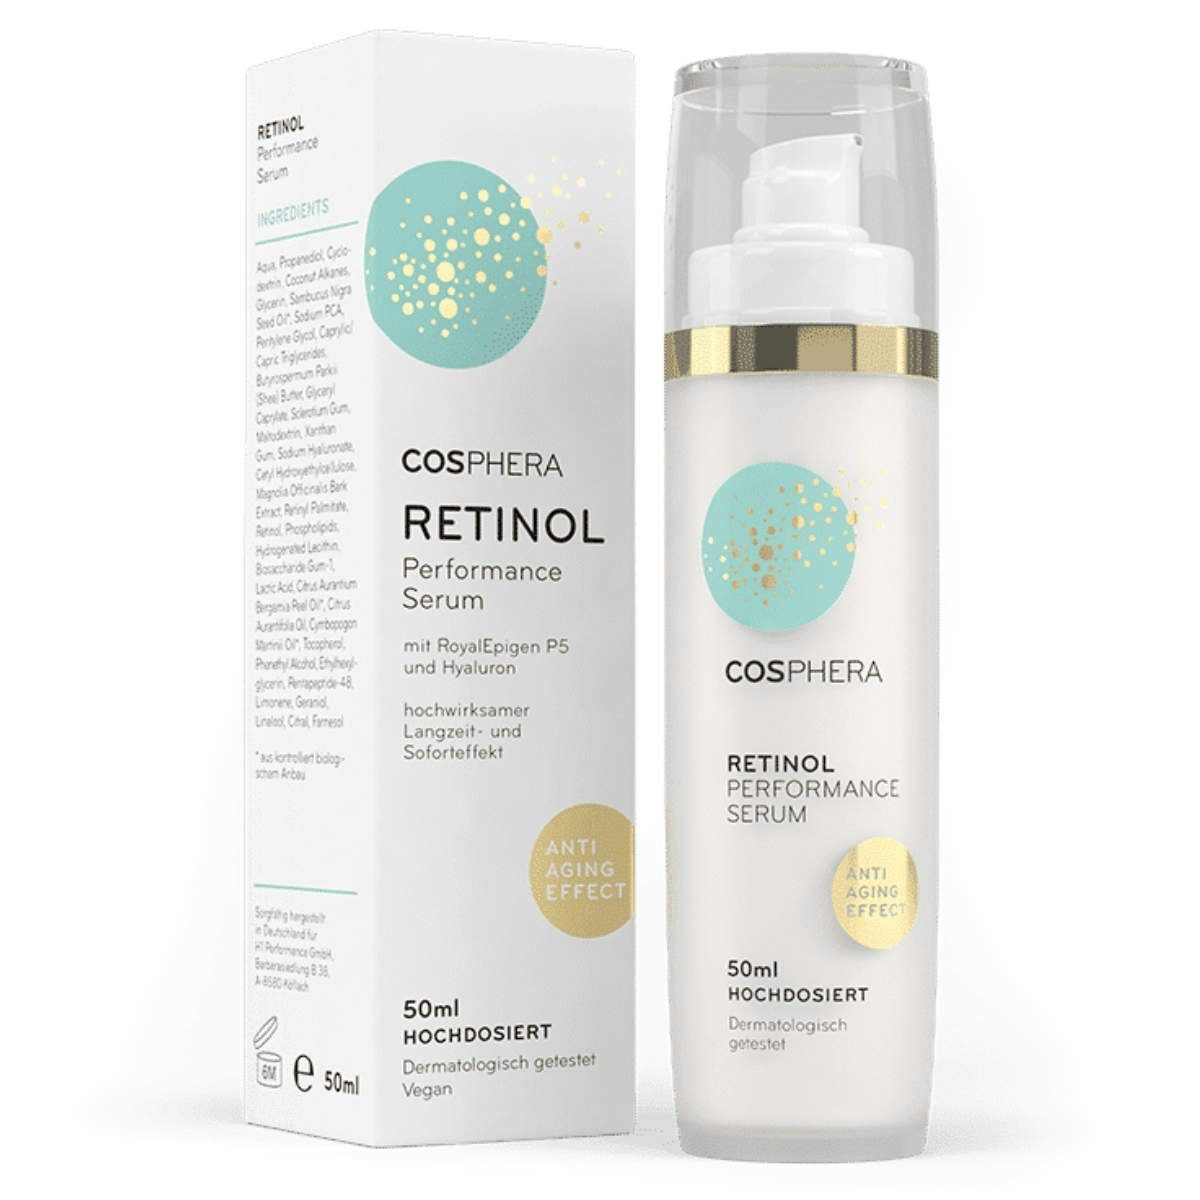 Retinol Performance Serum Cosphera Anti-Aging-Creme 50 ml Cosphera